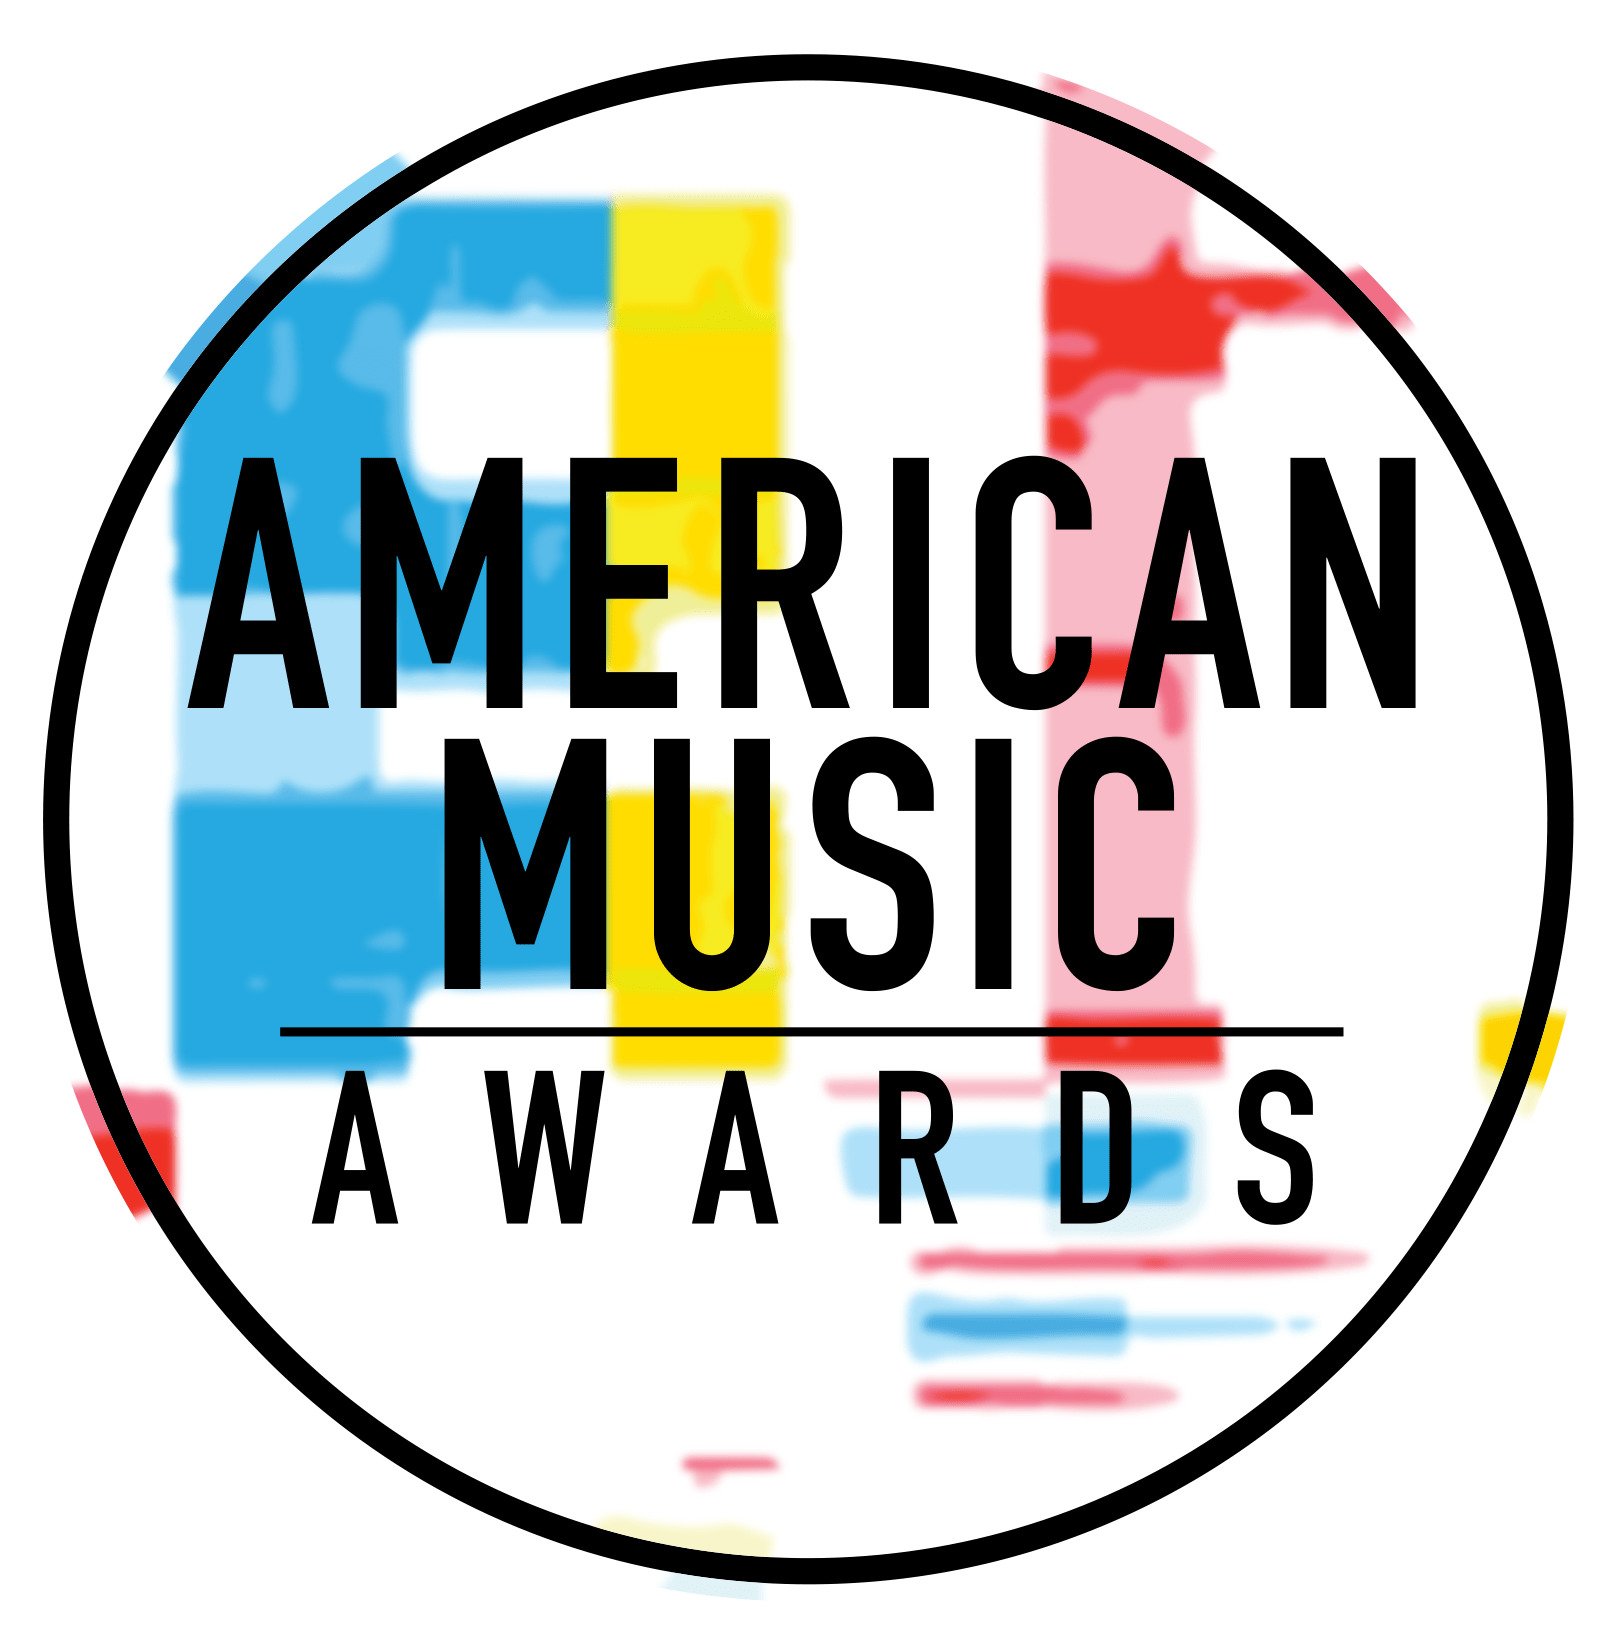 Știi care este artista care are cele mai multe premii American Music Awards?